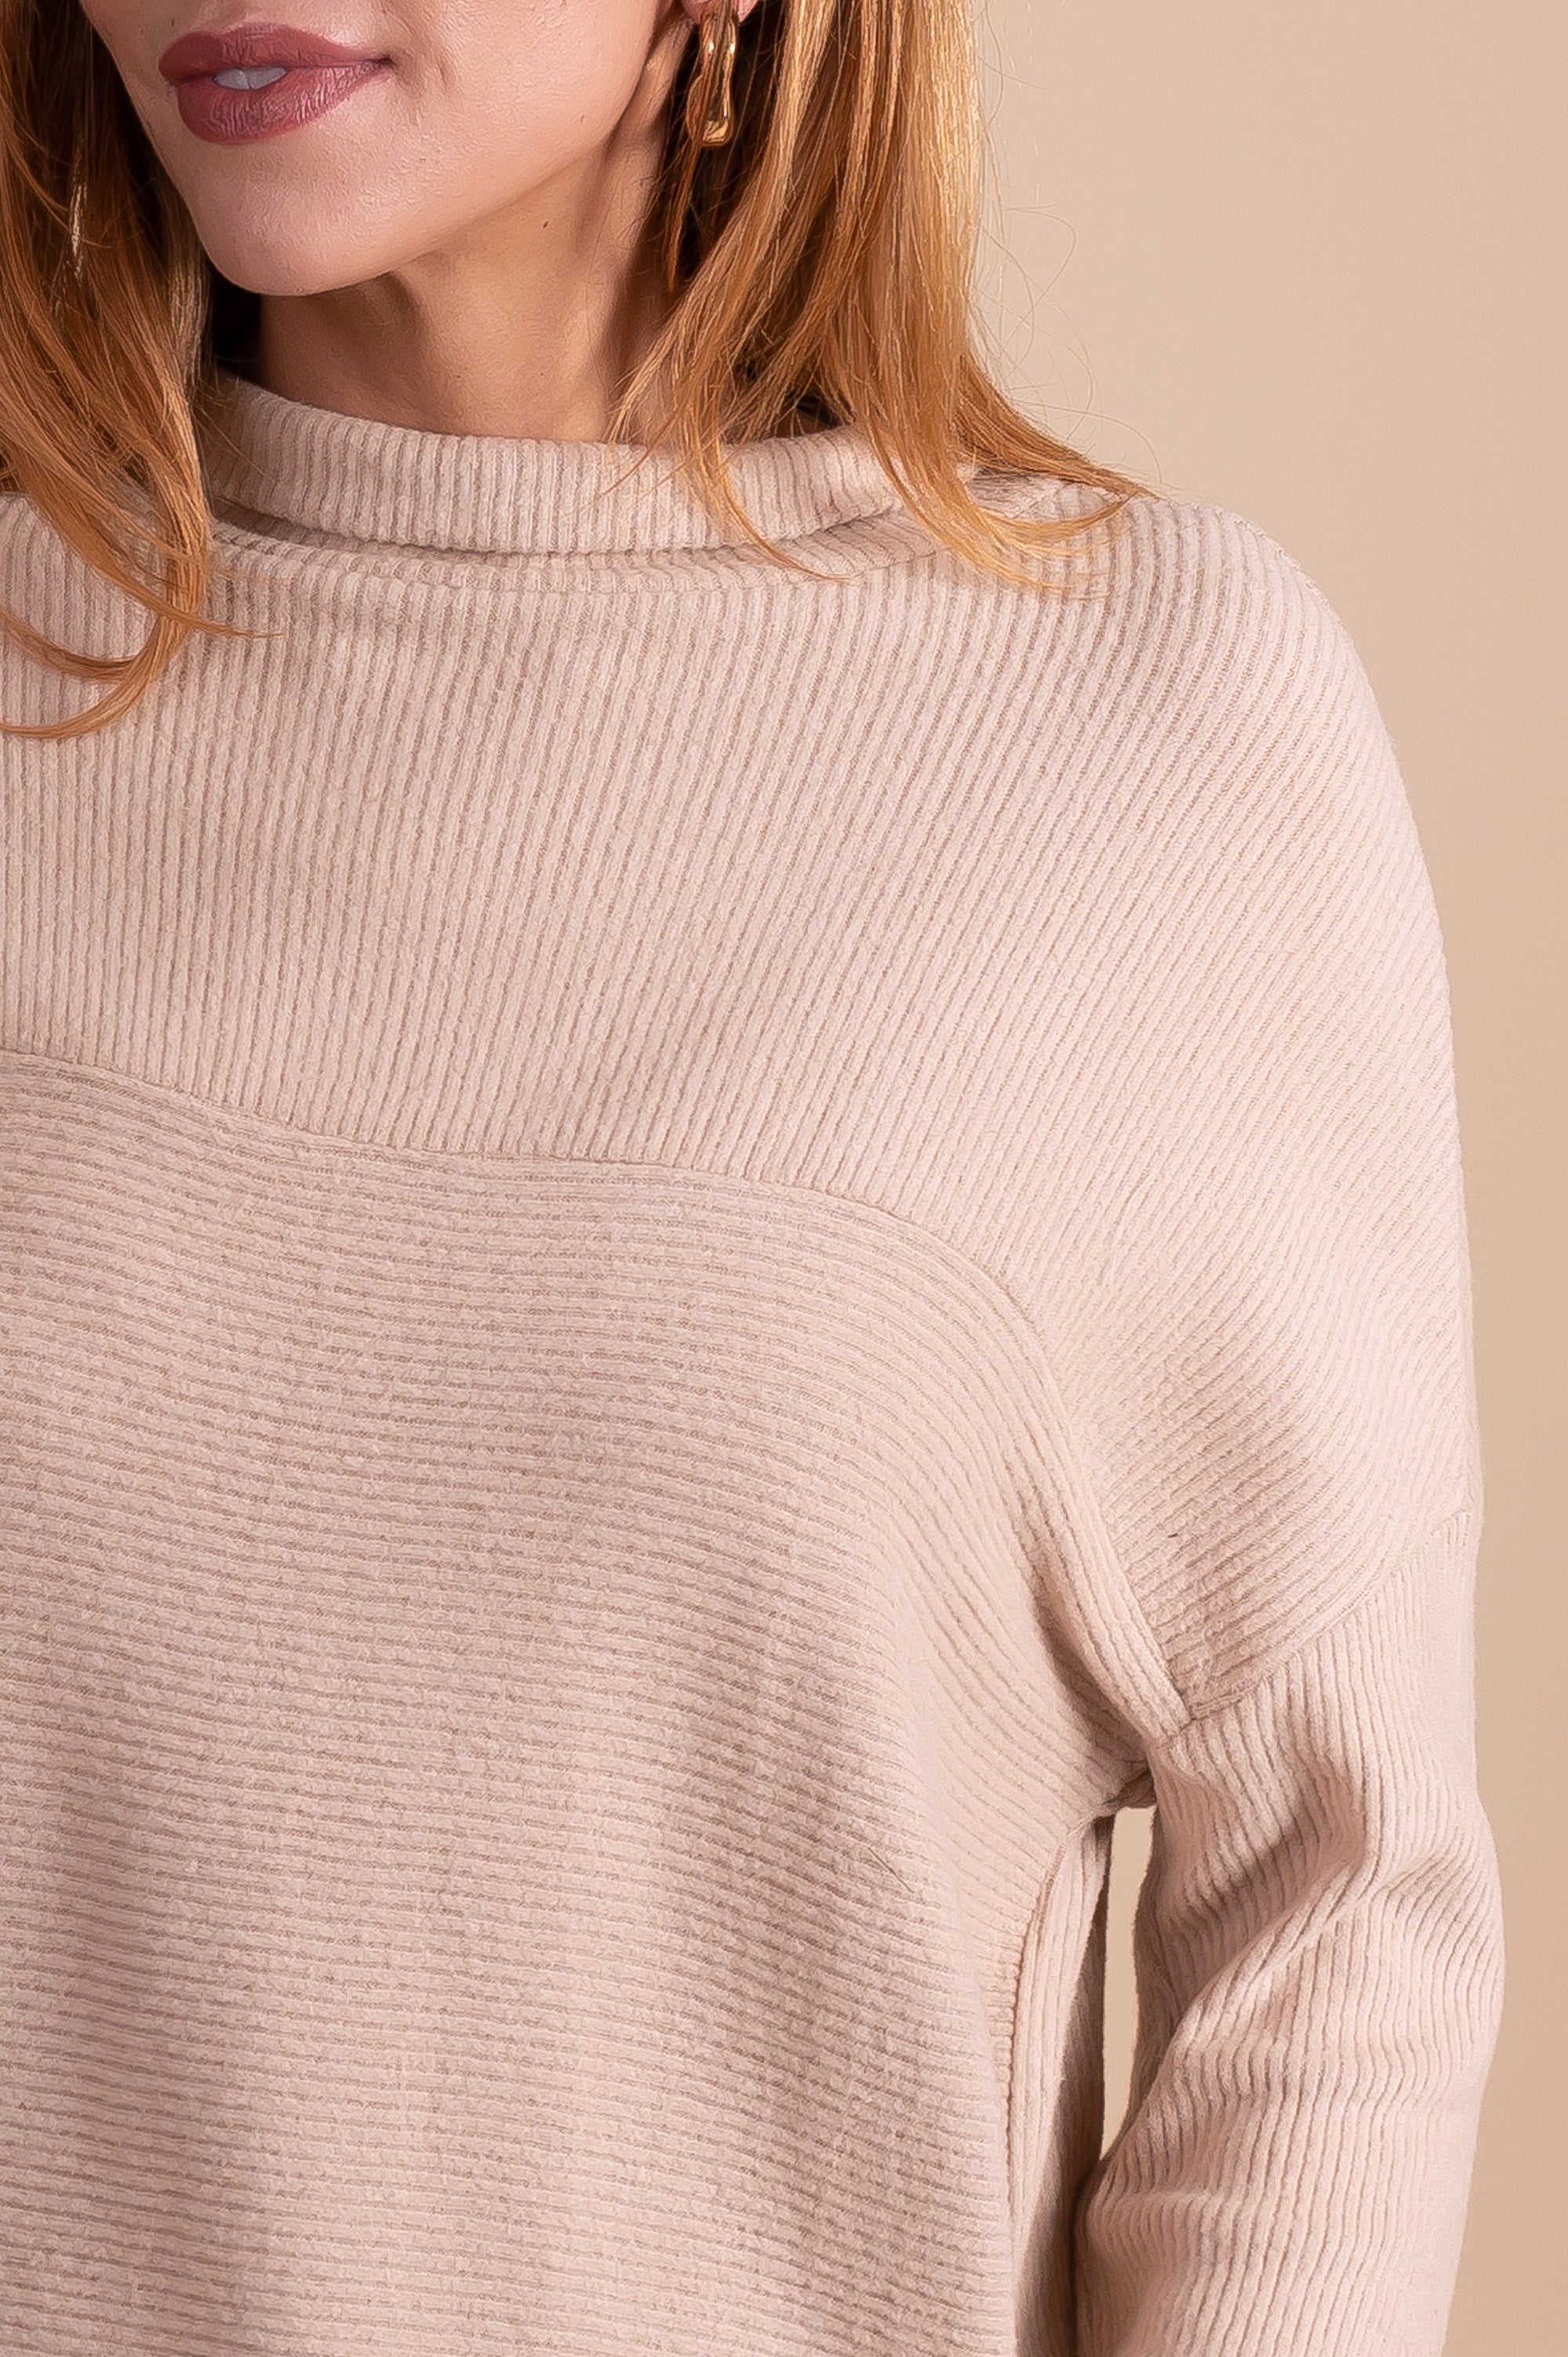 women's soft long sleeve light brown sweater